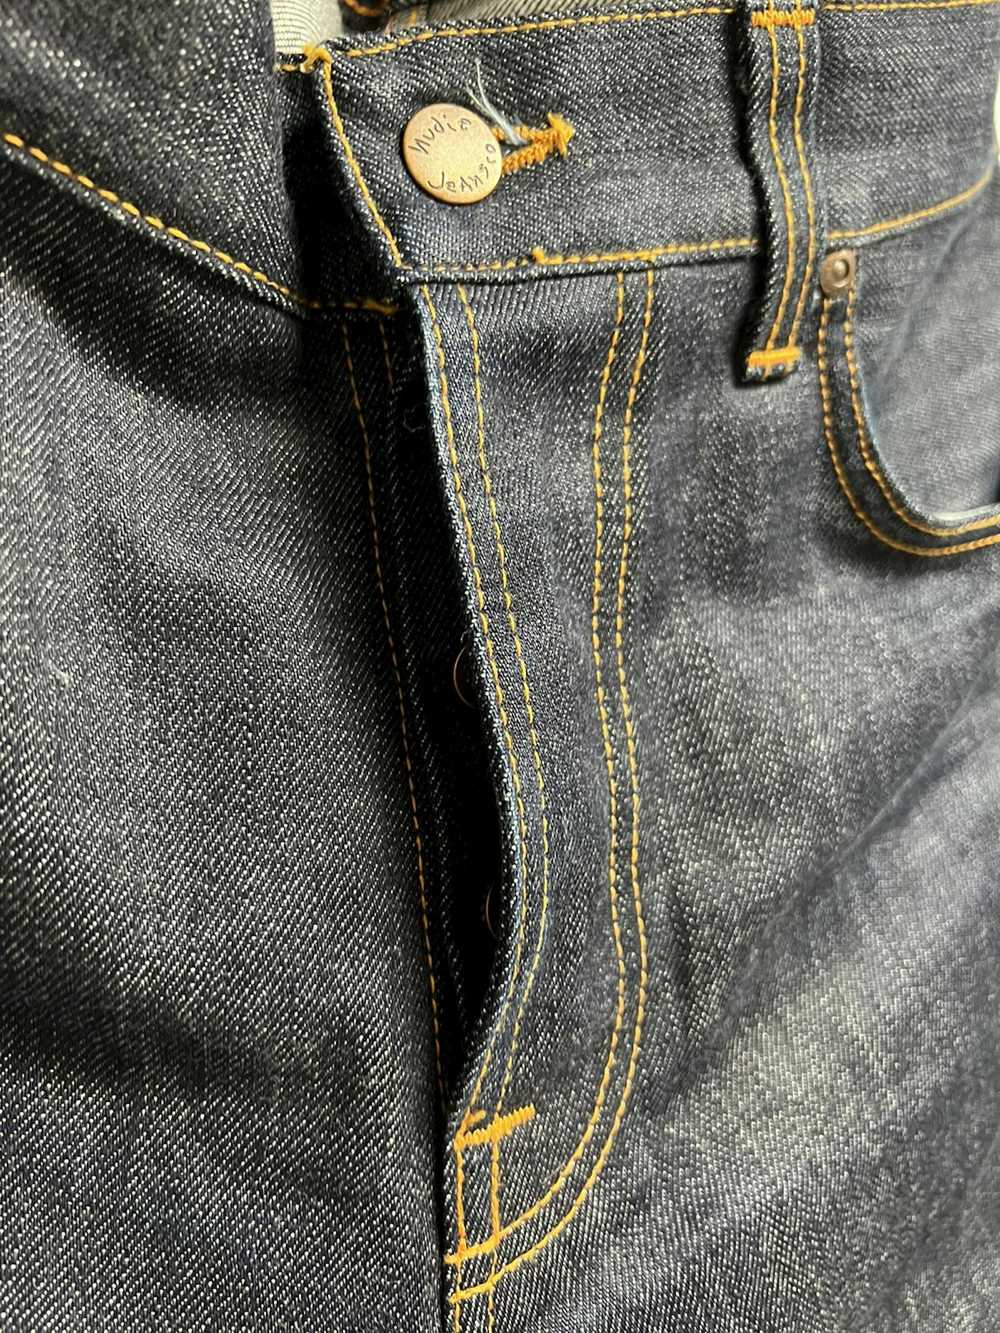 Nudie Jeans Nudie Jeans Dude Dan “Dry Classic Nav… - image 5